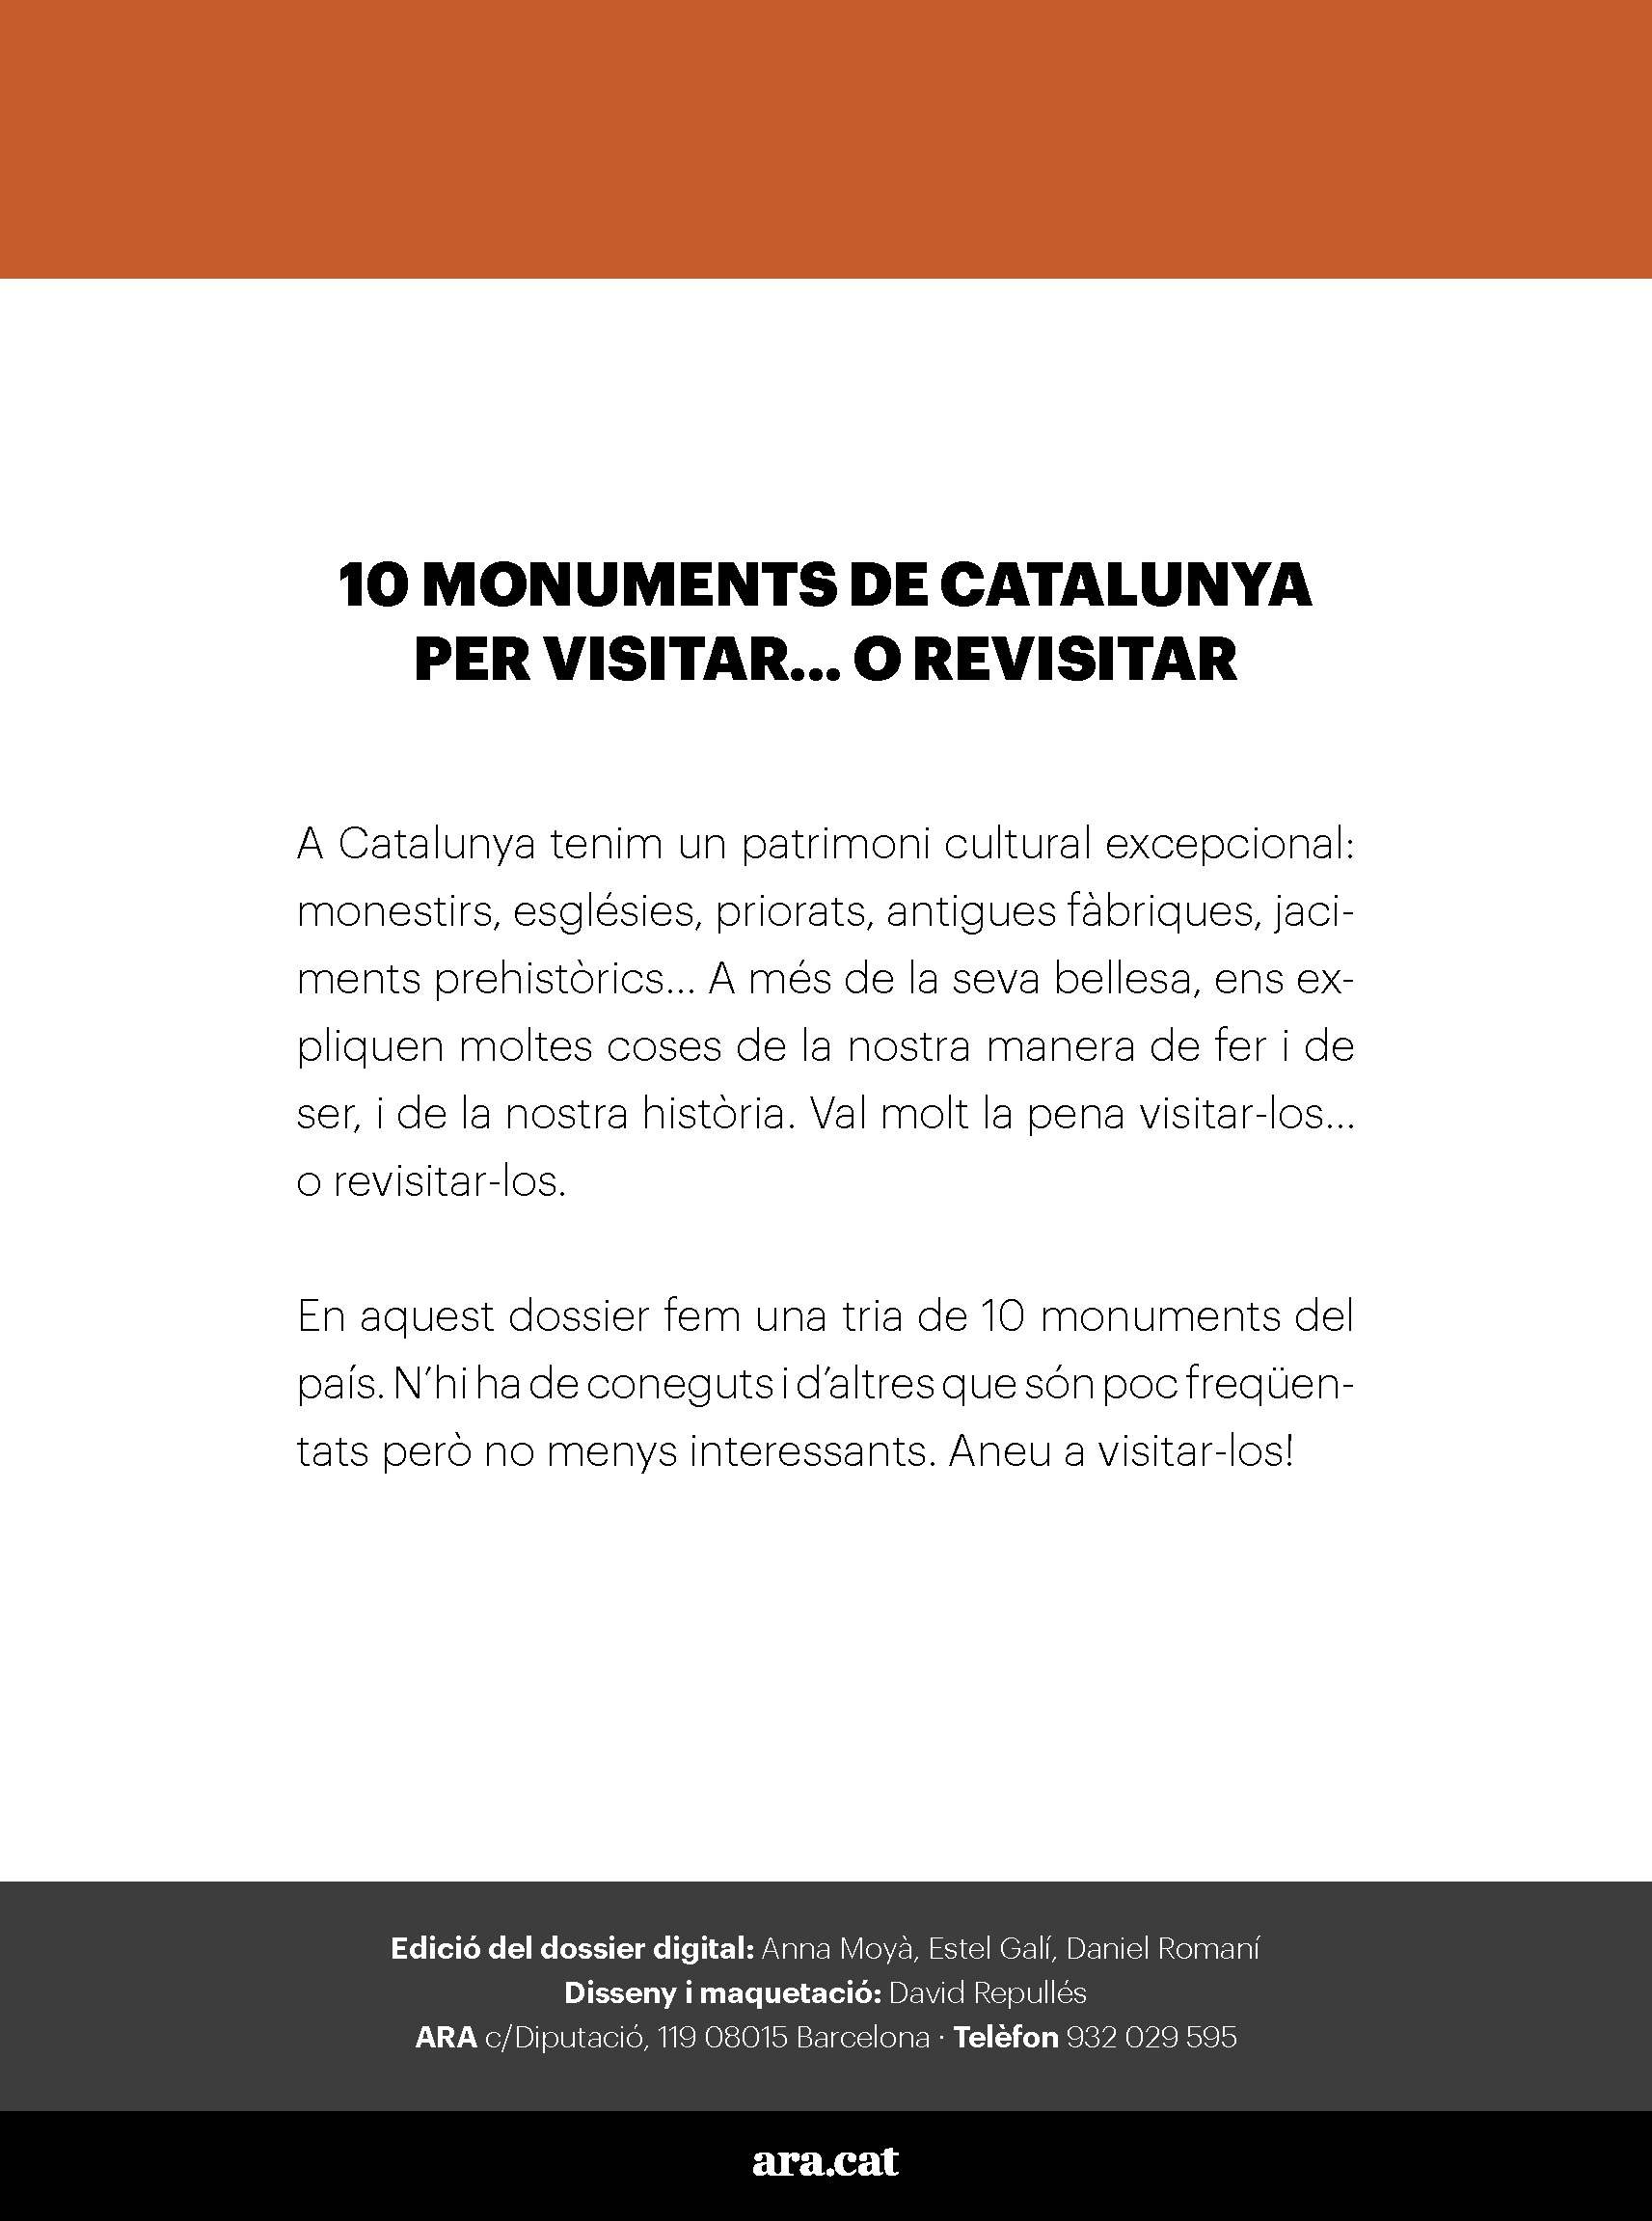 10 monuments de Catalunya per visitar... o revisitar 1